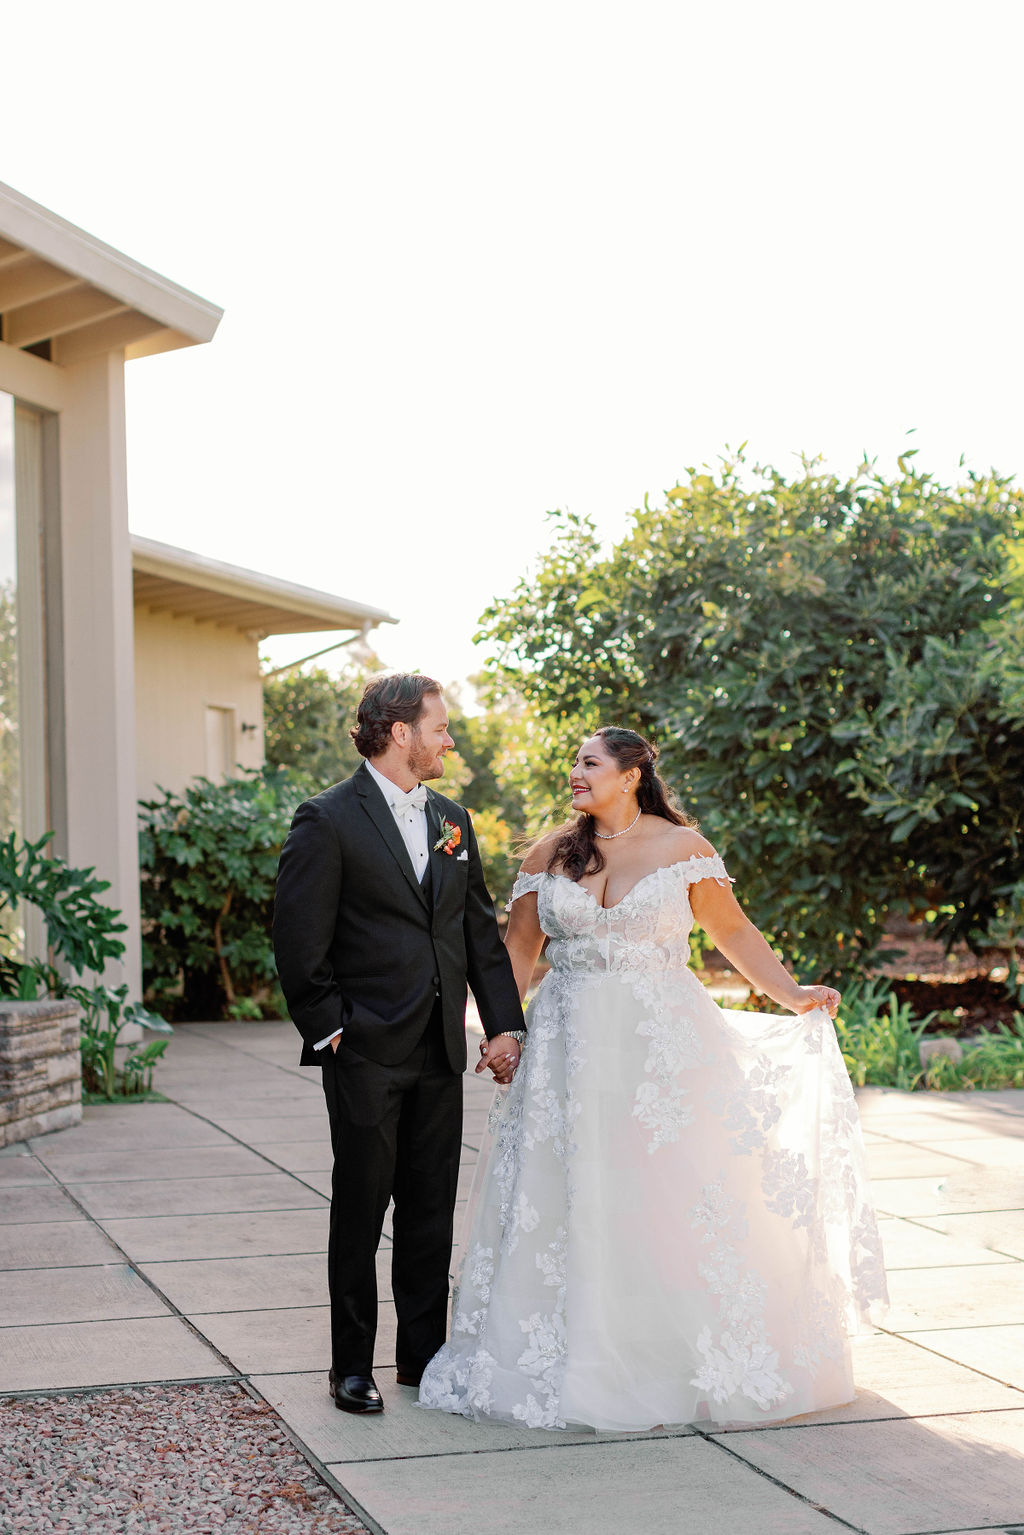 Bride and Groom at Mission Santa Barbara wedding | Photo by Sarah Block Photography